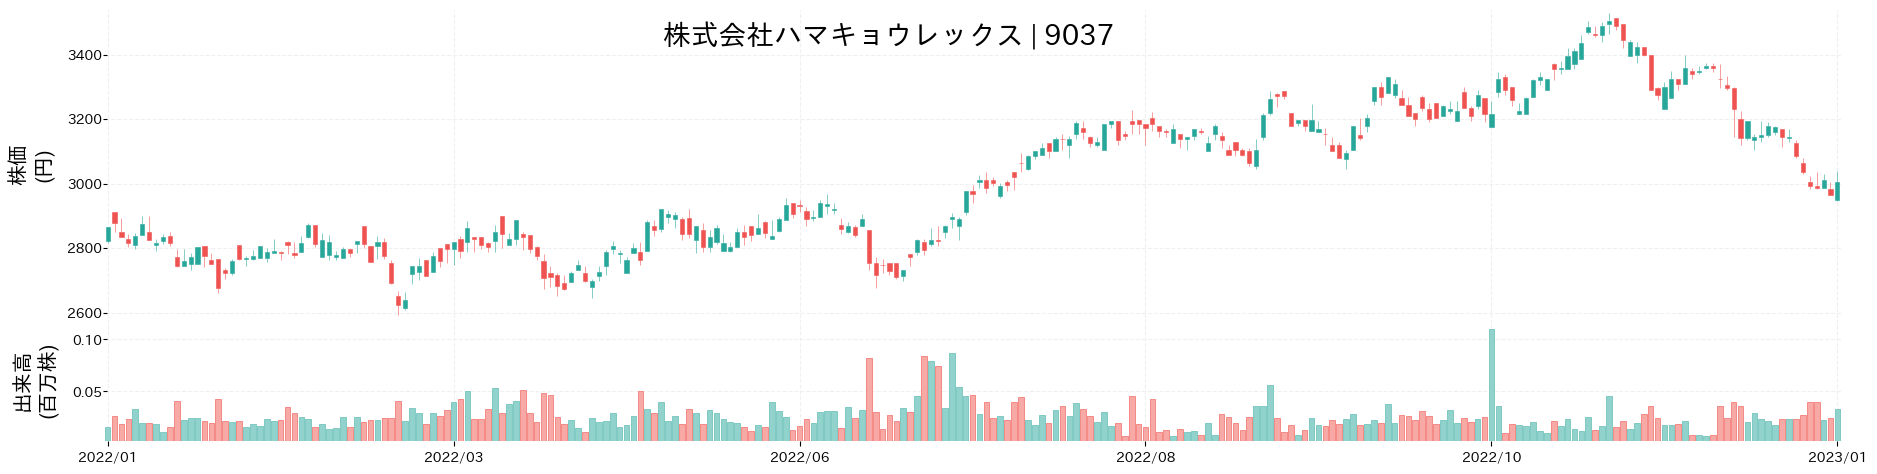 ハマキョウレックスの株価推移(2022)